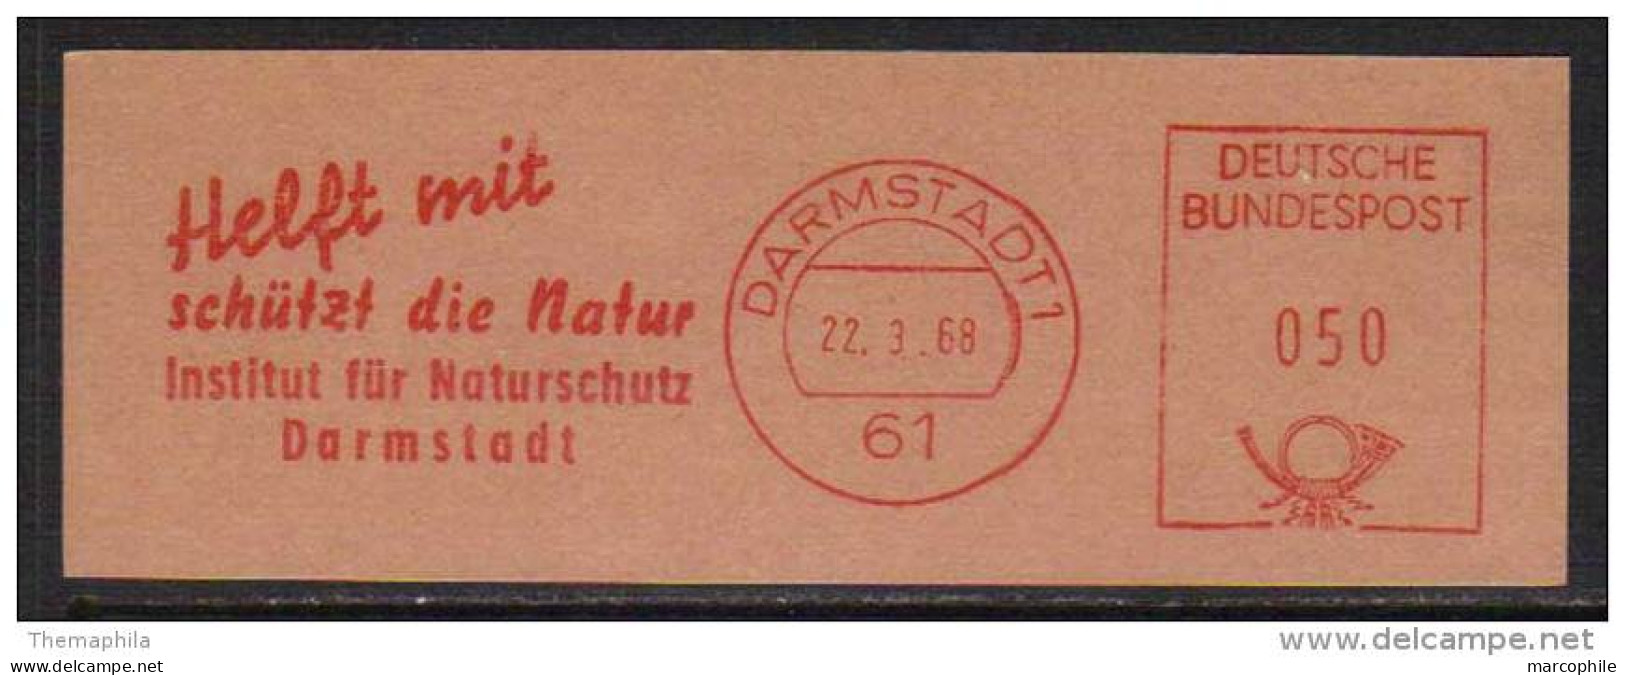 PROTECTION DE LA NATURE   /1968  ALLEMAGNE EMA  (ref M113) - Protection De L'environnement & Climat